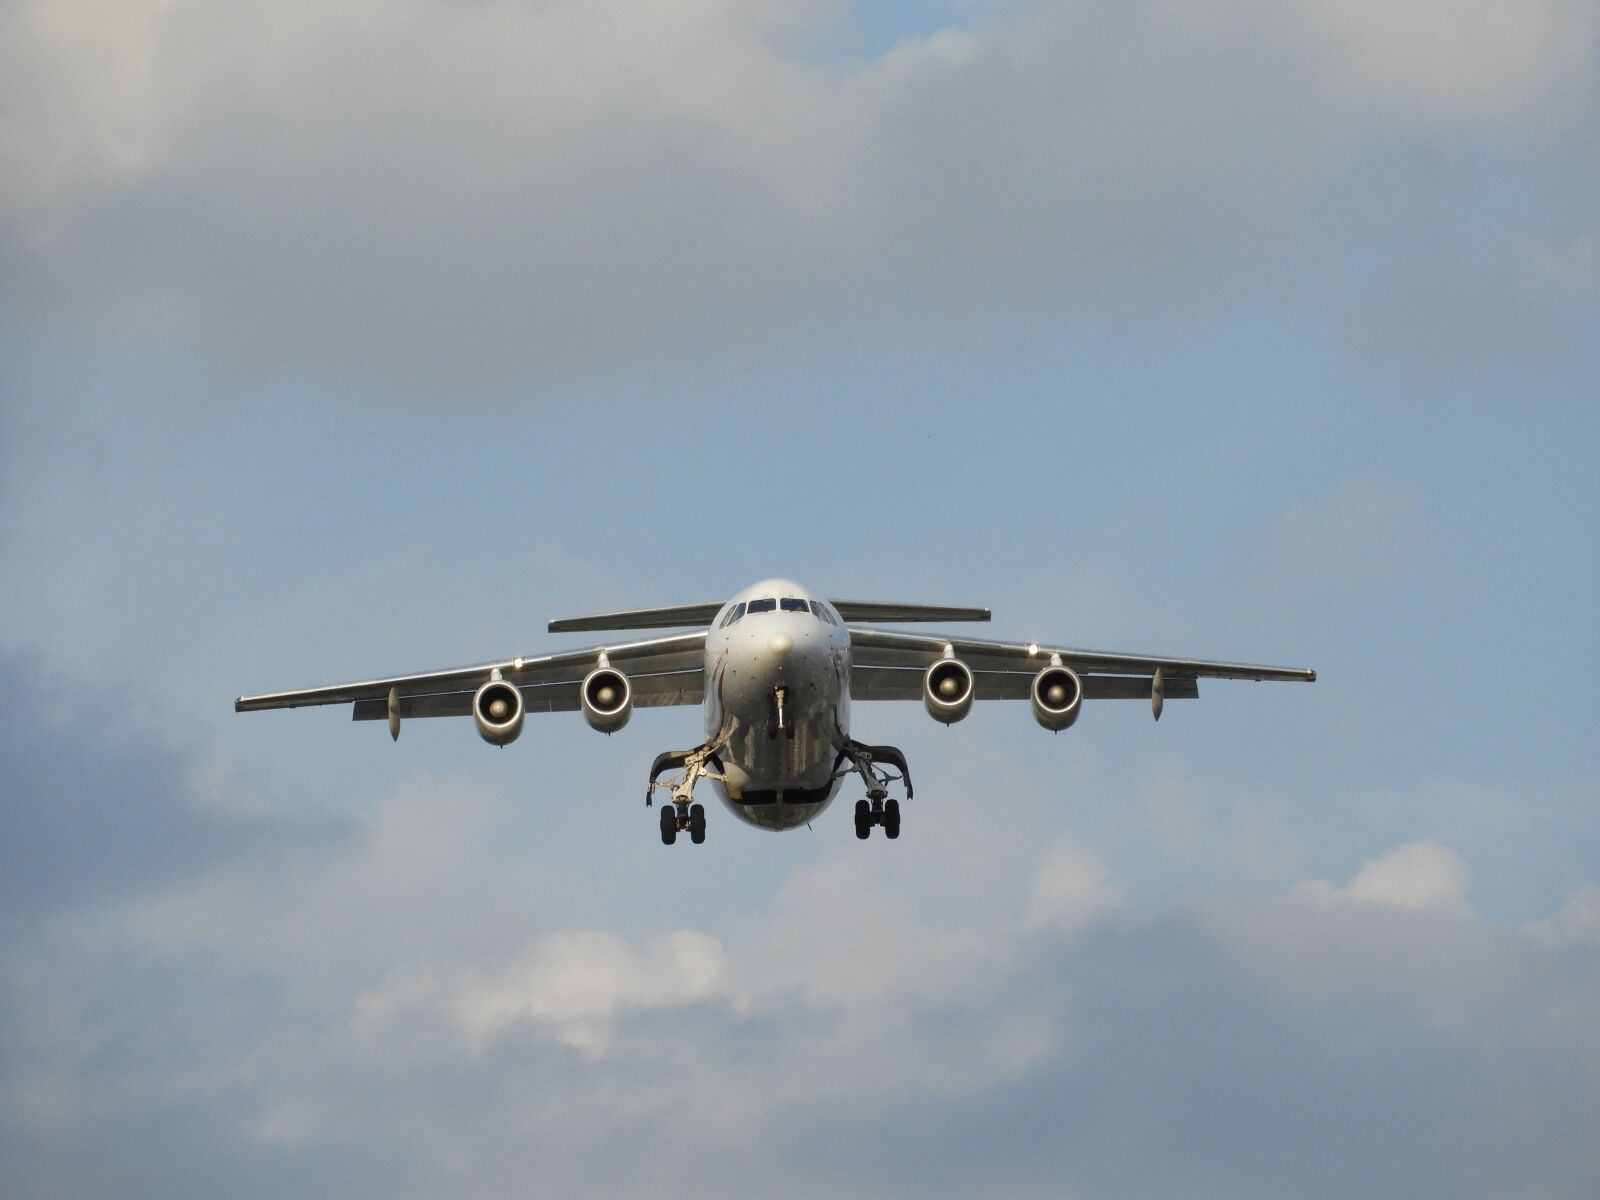 Nikon Coolpix B700 sample photo. Aircraft, landing, airport photography